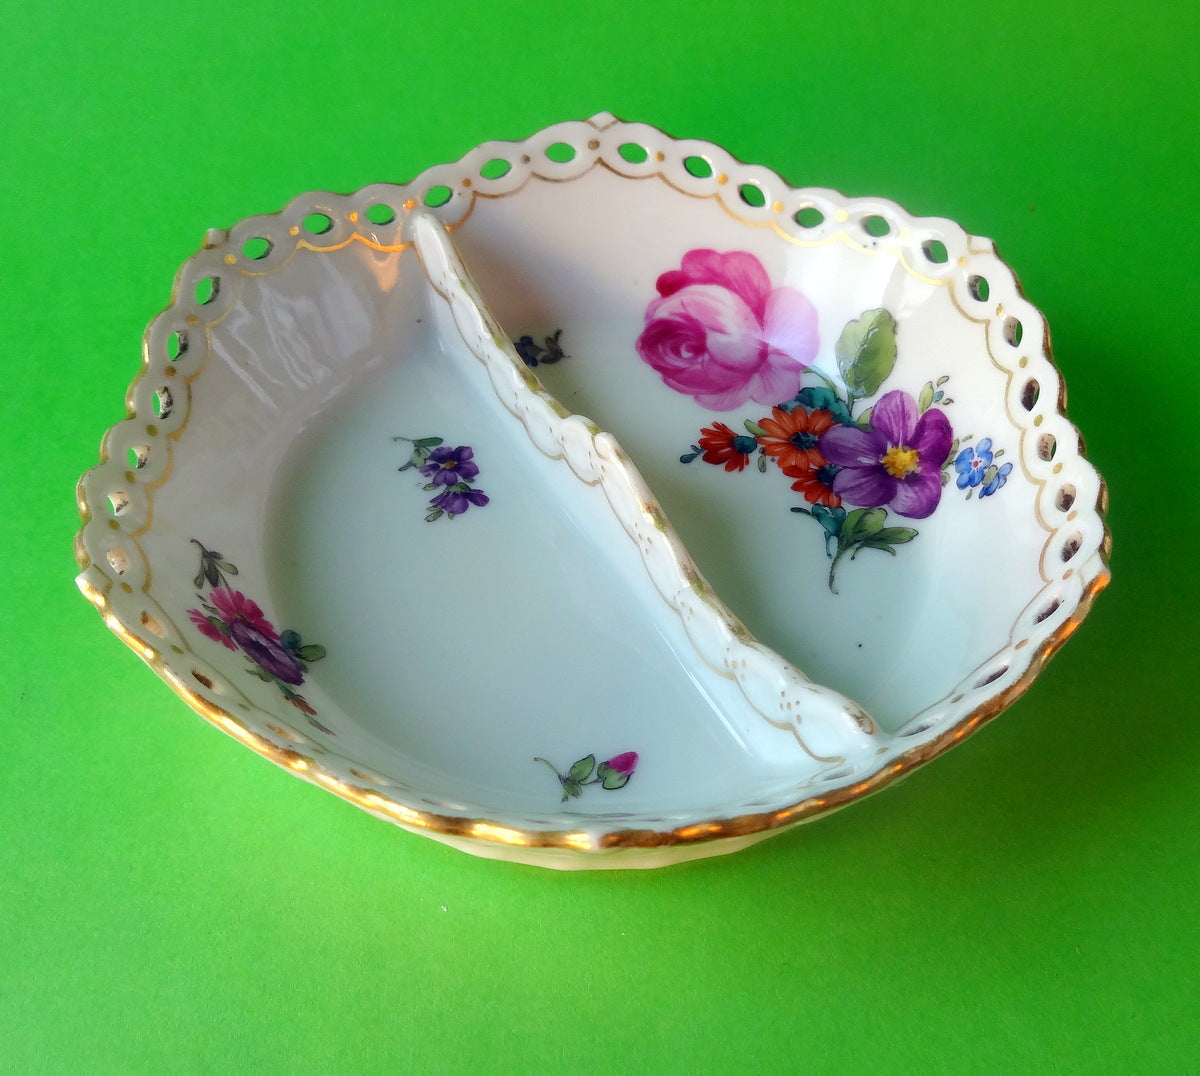 Lille skål fra Den Kongelige Porcelænsfabrik (Royal Copenhagen)